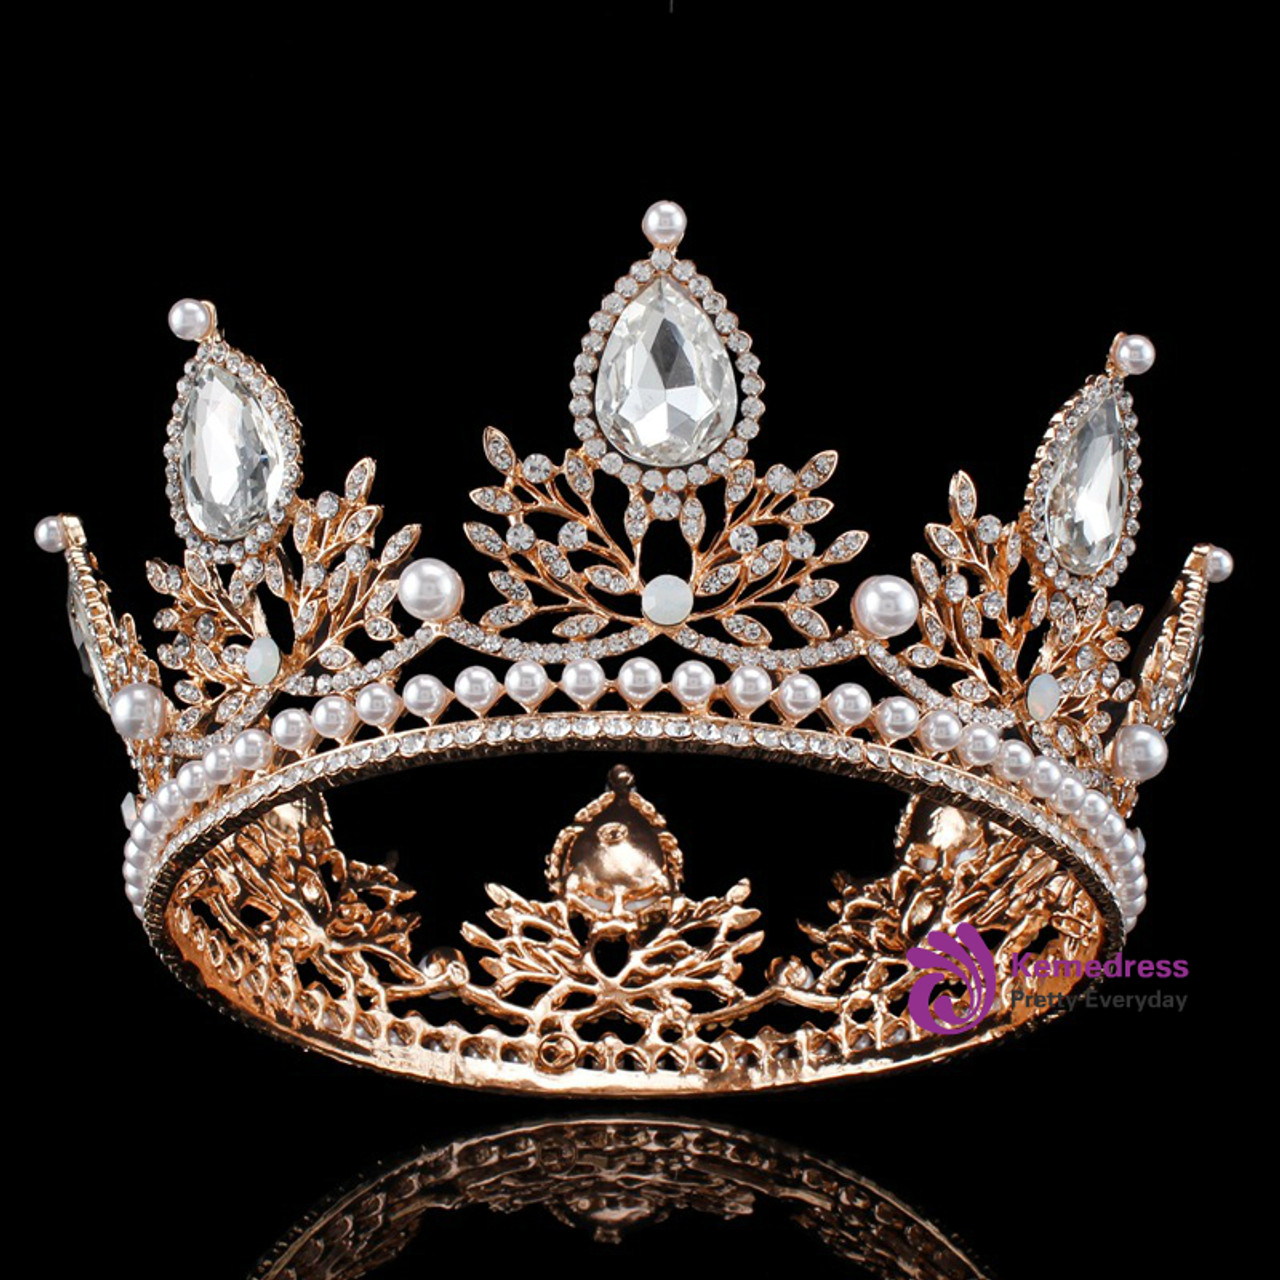 Round Crown Rhinestone Queen Crown Wedding Dress Head Jewelry